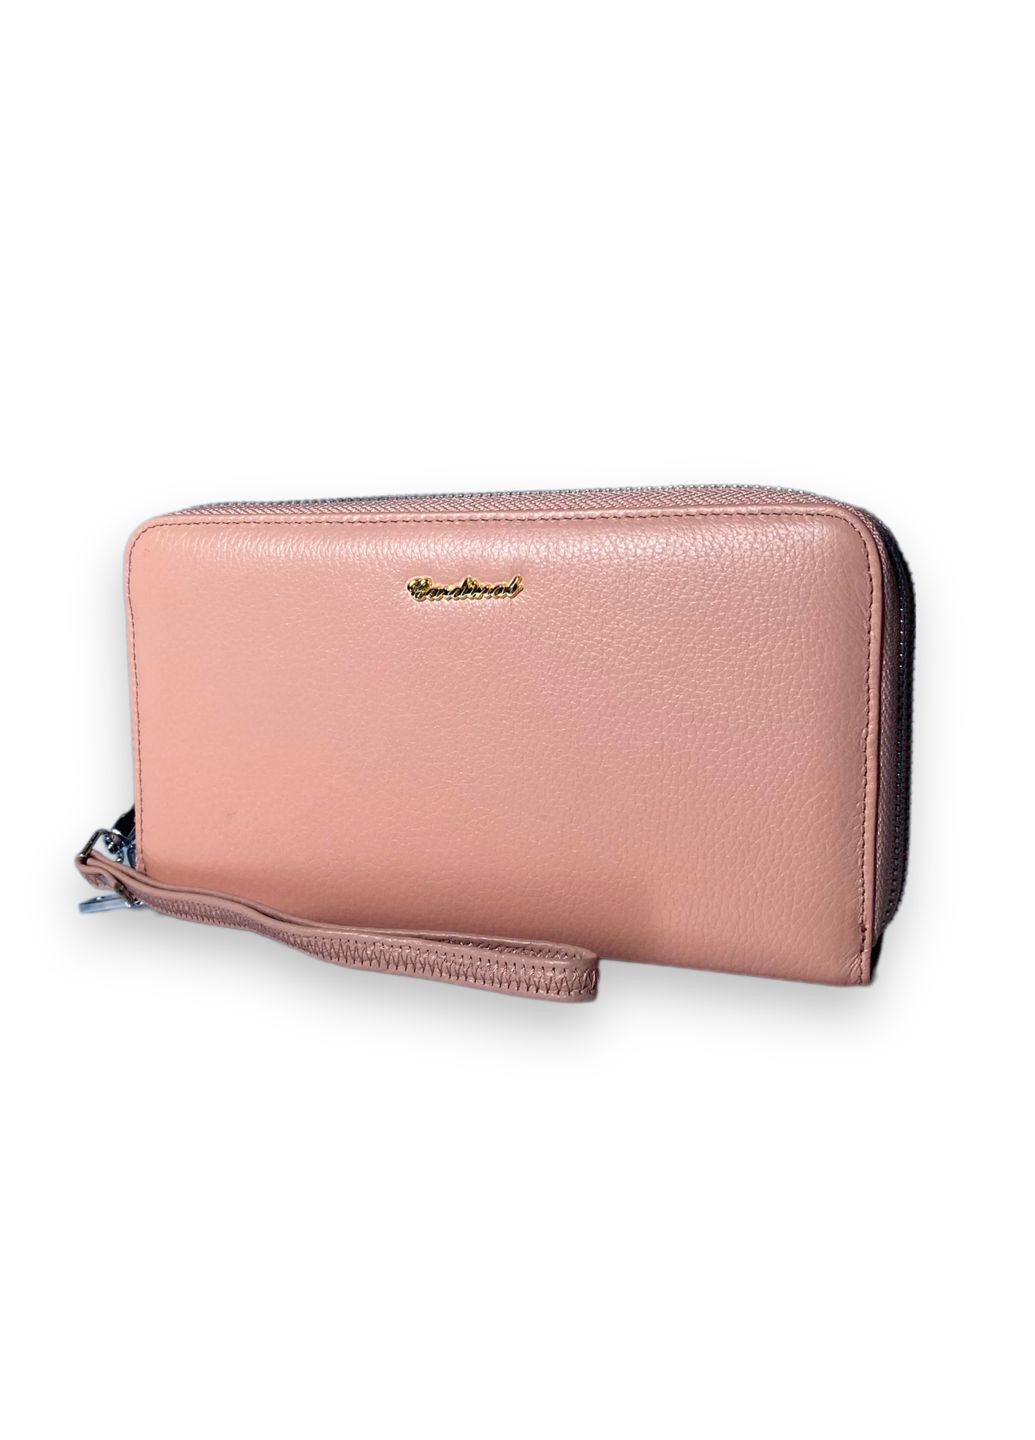 Жіночий гаманець клатч натуральна шкіра 6 відділів для купюр 8 для карток розмір: 20*12*4 см рожевий Cardinal (266911693)